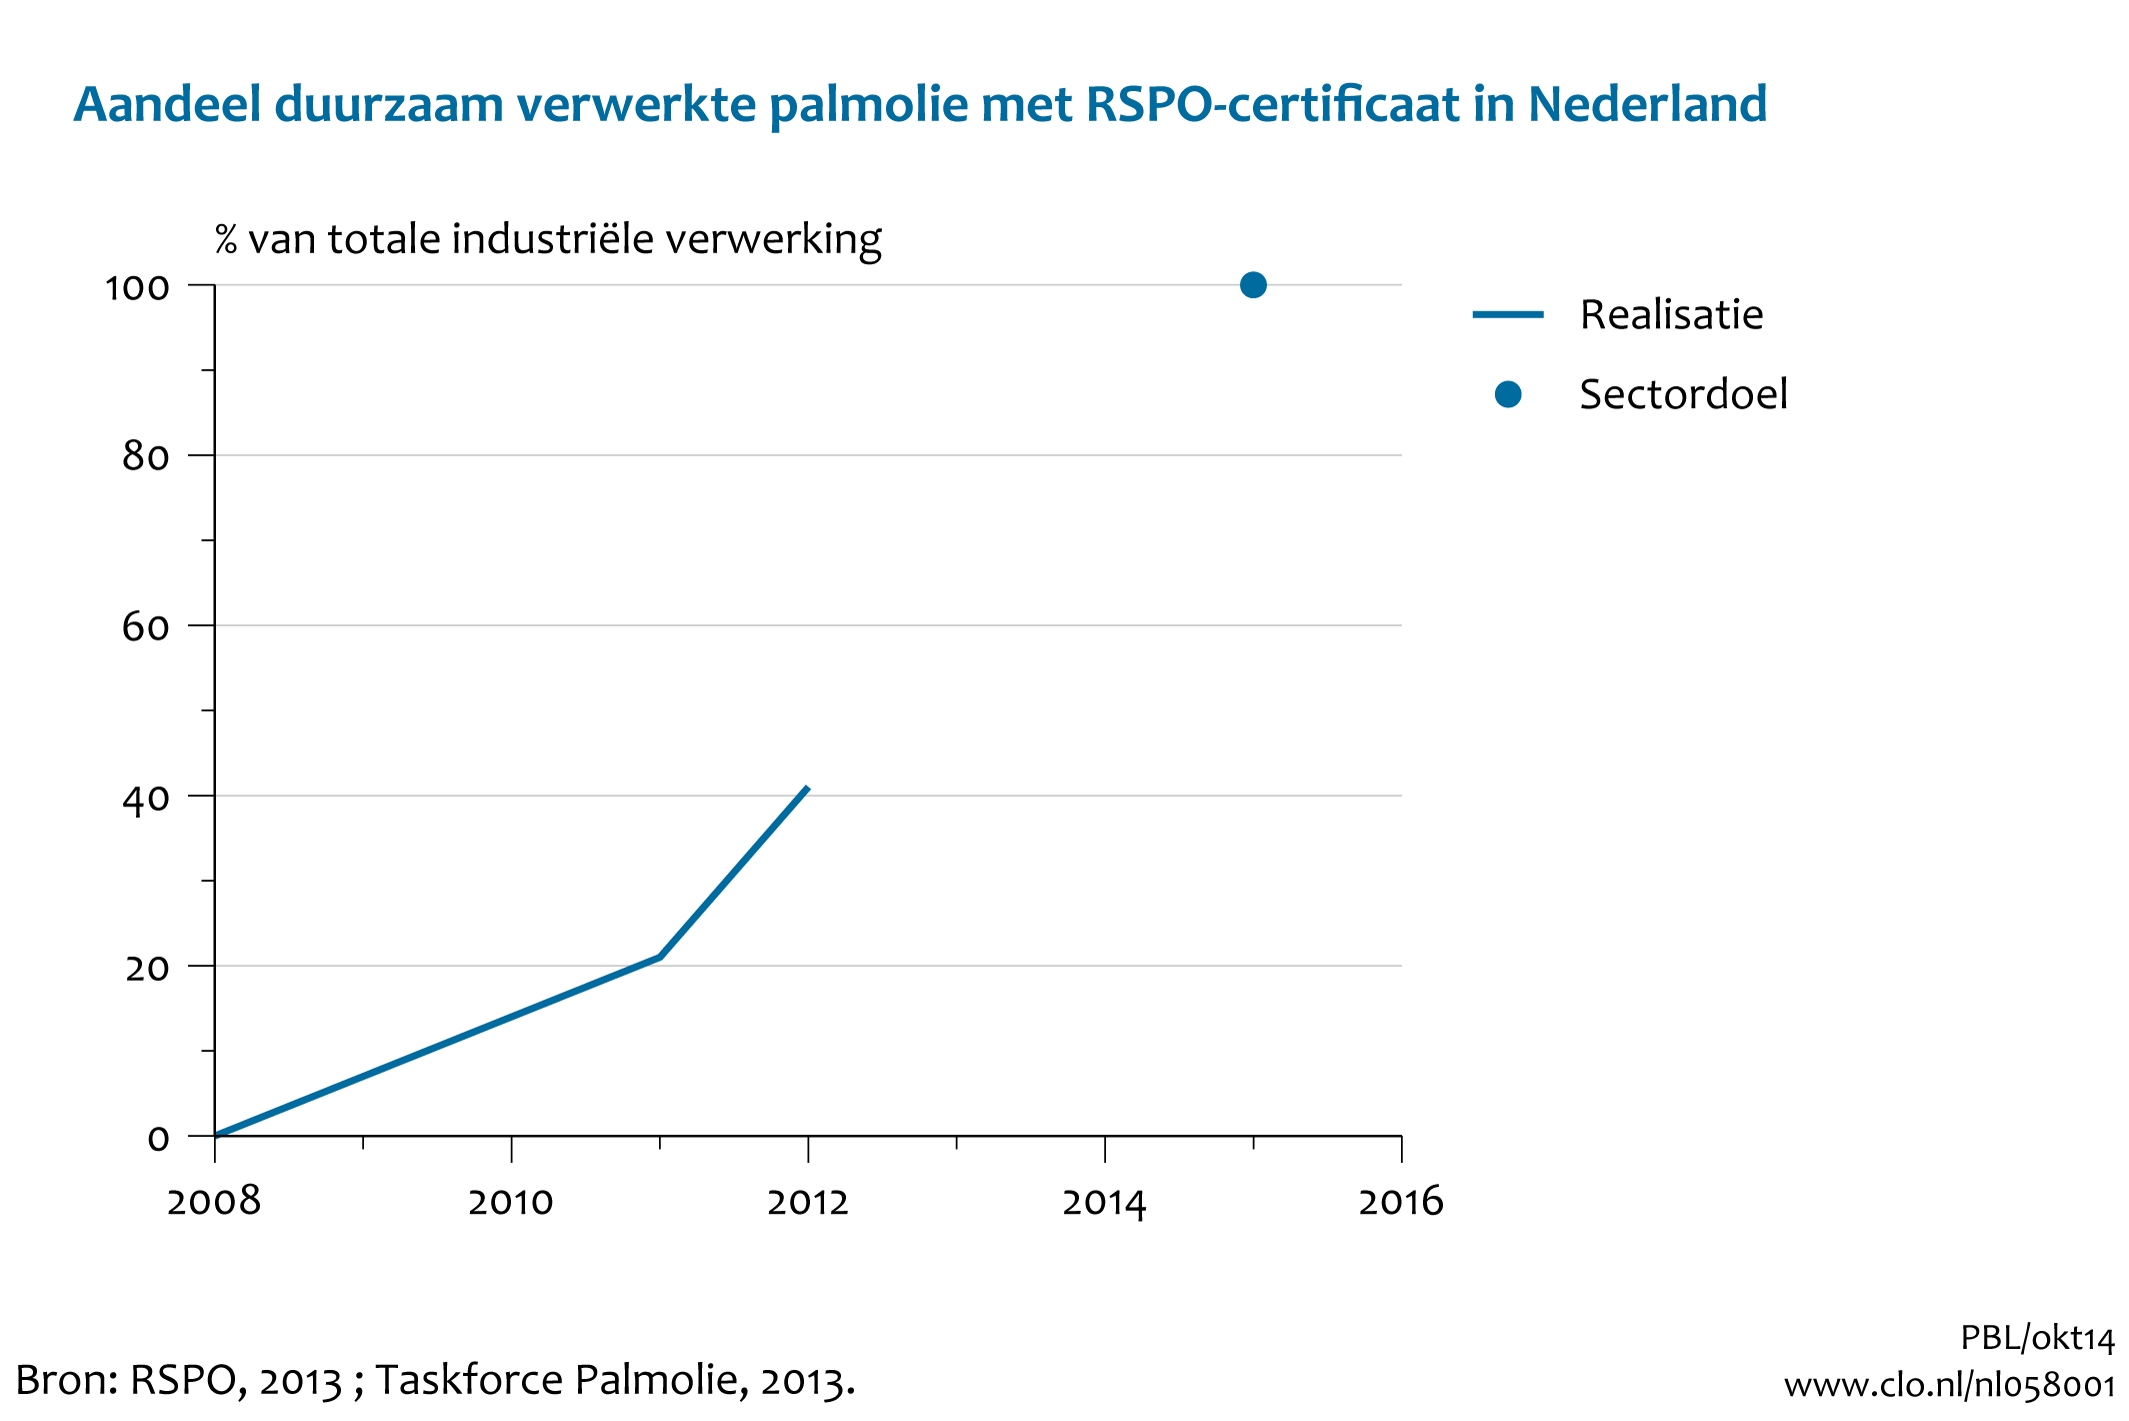 Figuur Aandeel van duurzaam geproduceerde palmolie in de Nederlandse industriële verwerking. In de rest van de tekst wordt deze figuur uitgebreider uitgelegd.